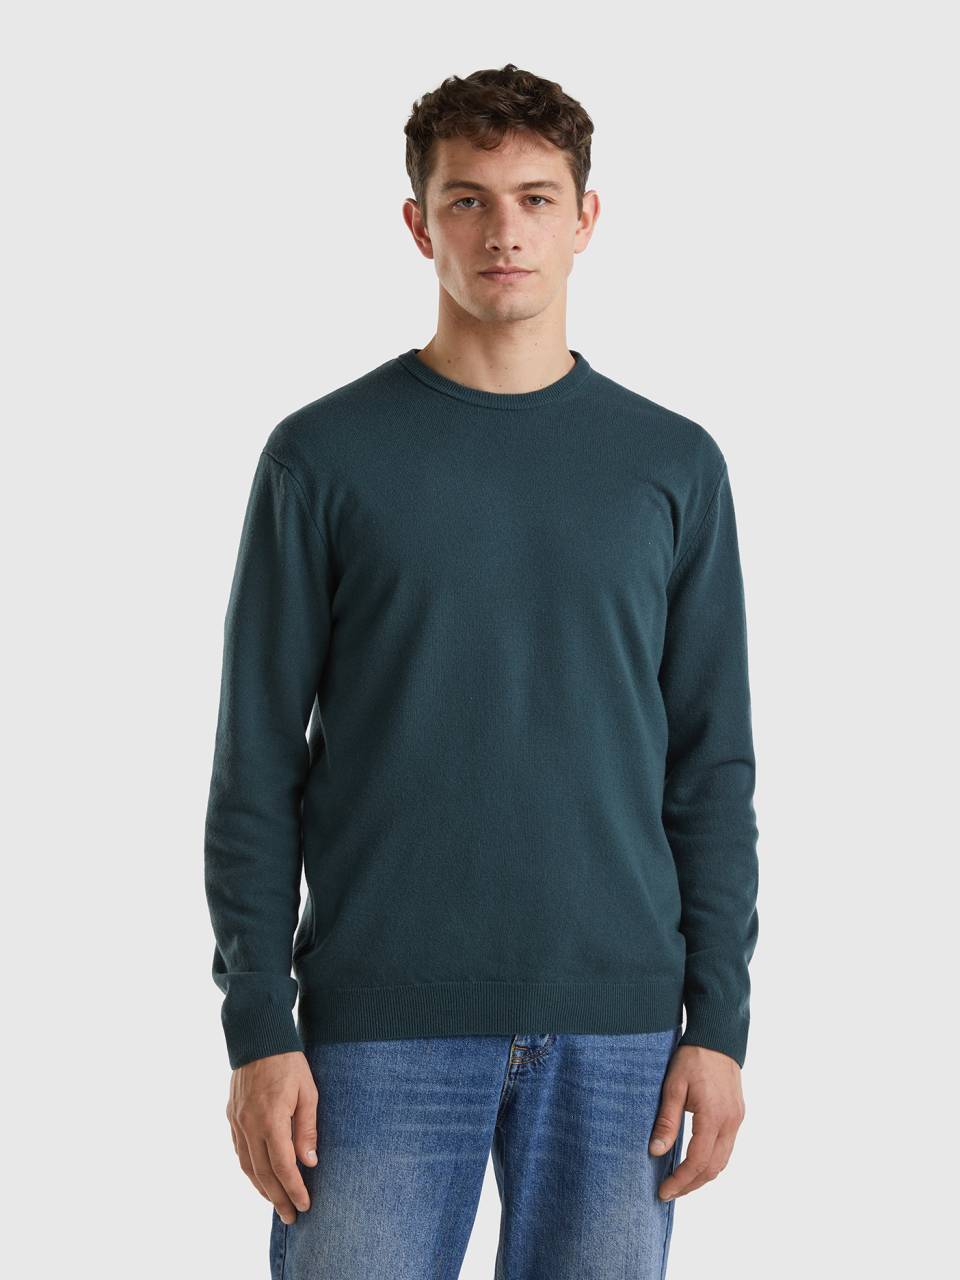 Benetton crew neck sweater in pure virgin wool. 1